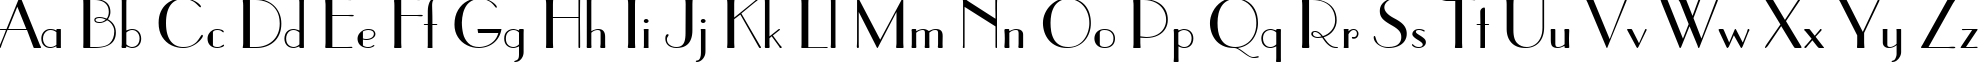 Пример написания английского алфавита шрифтом Paragon